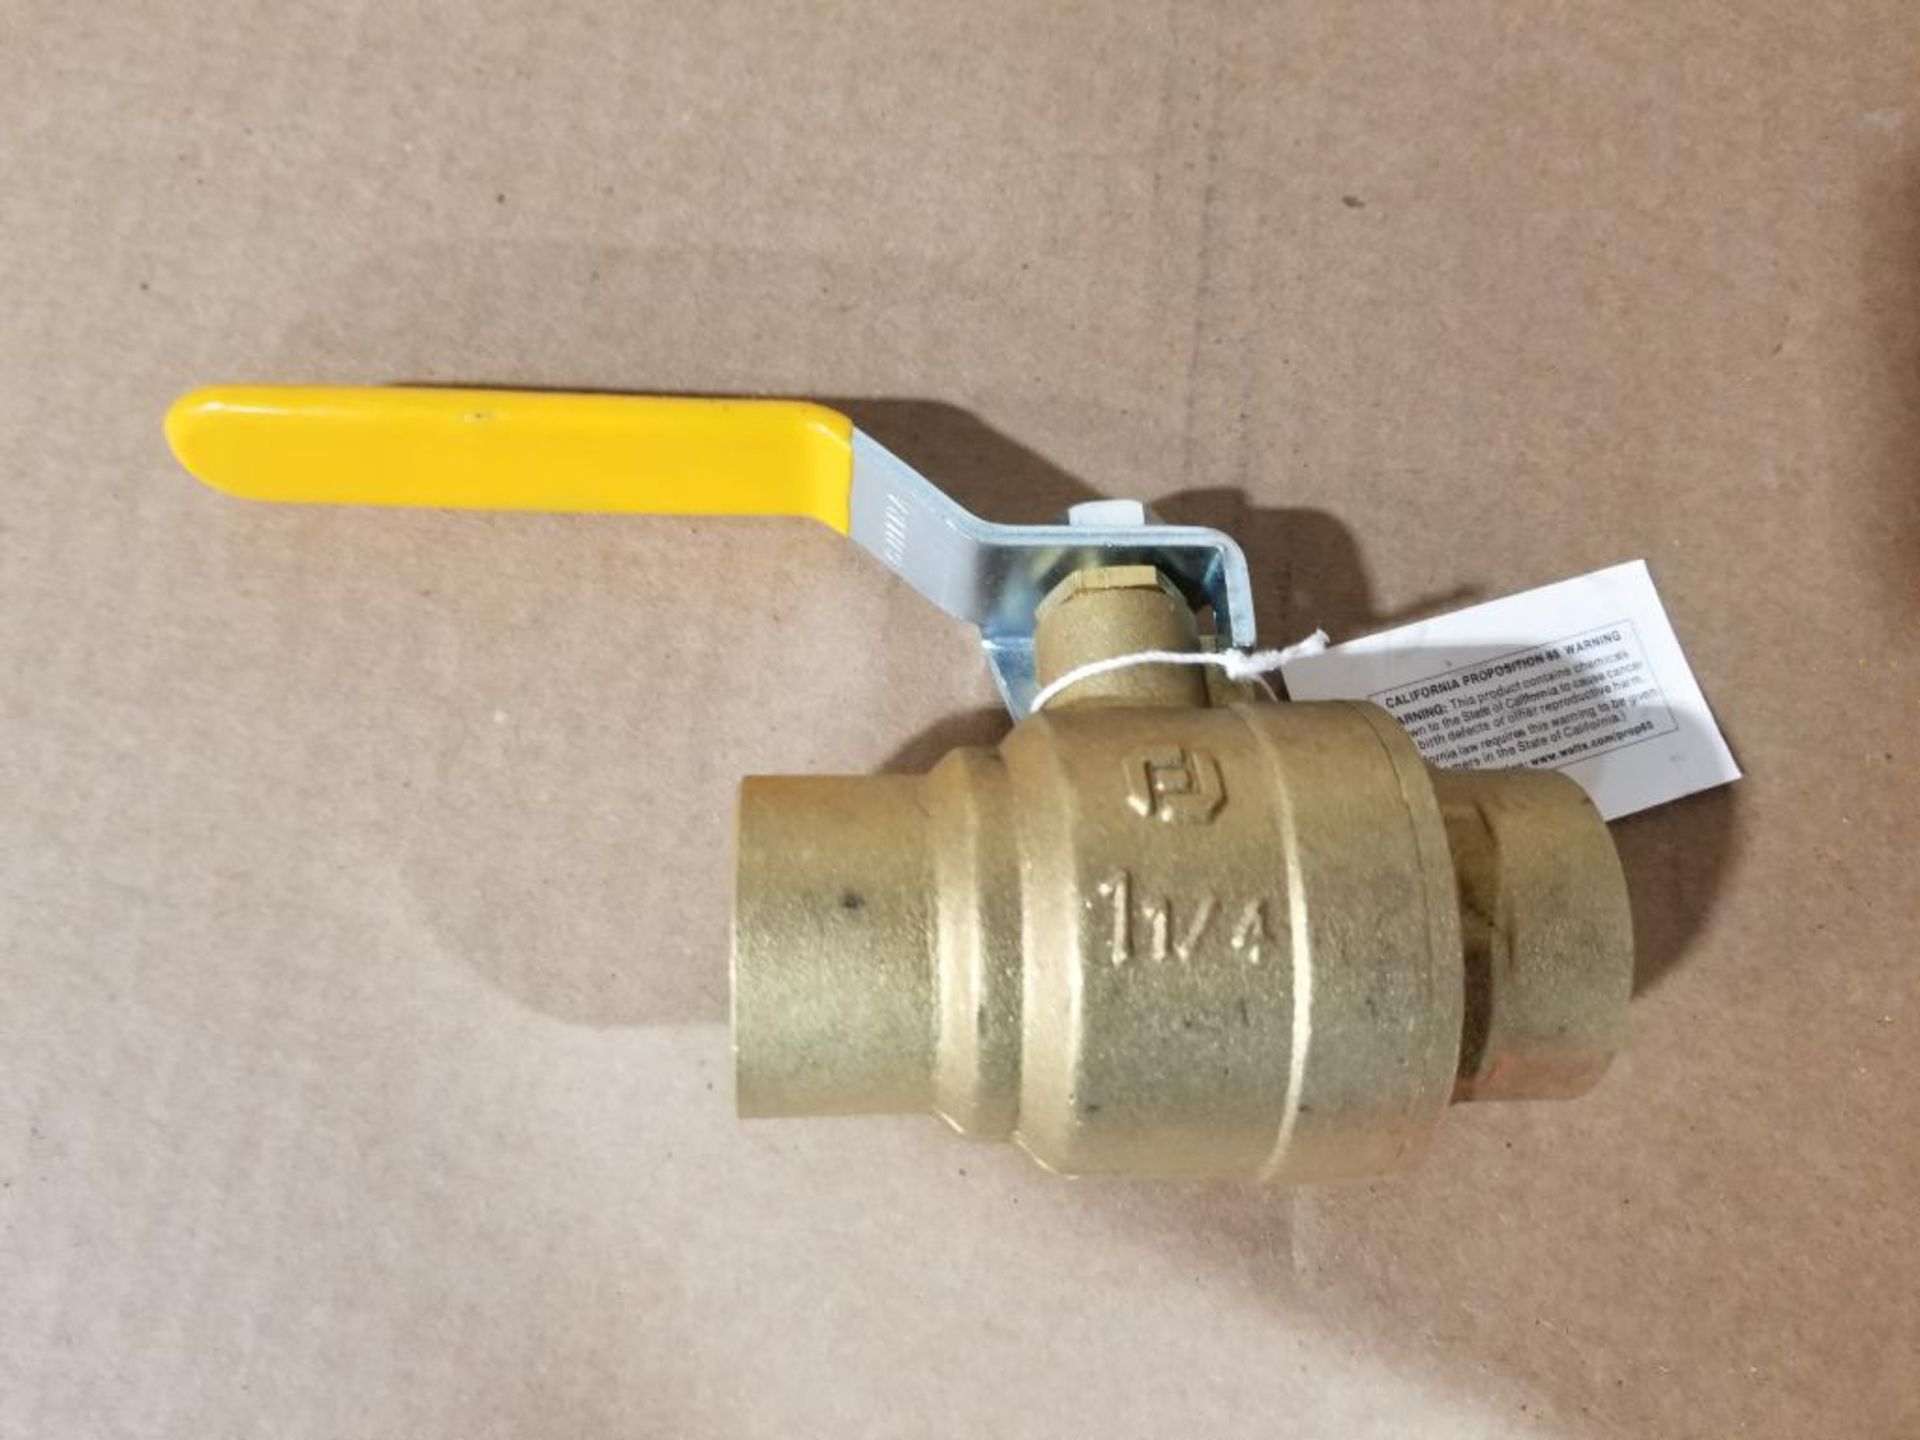 Qty 40 - Watts 1 1/4in brass solder on shut off valve. Part number 1-1/4-FBVS-3C. New in bulk box.